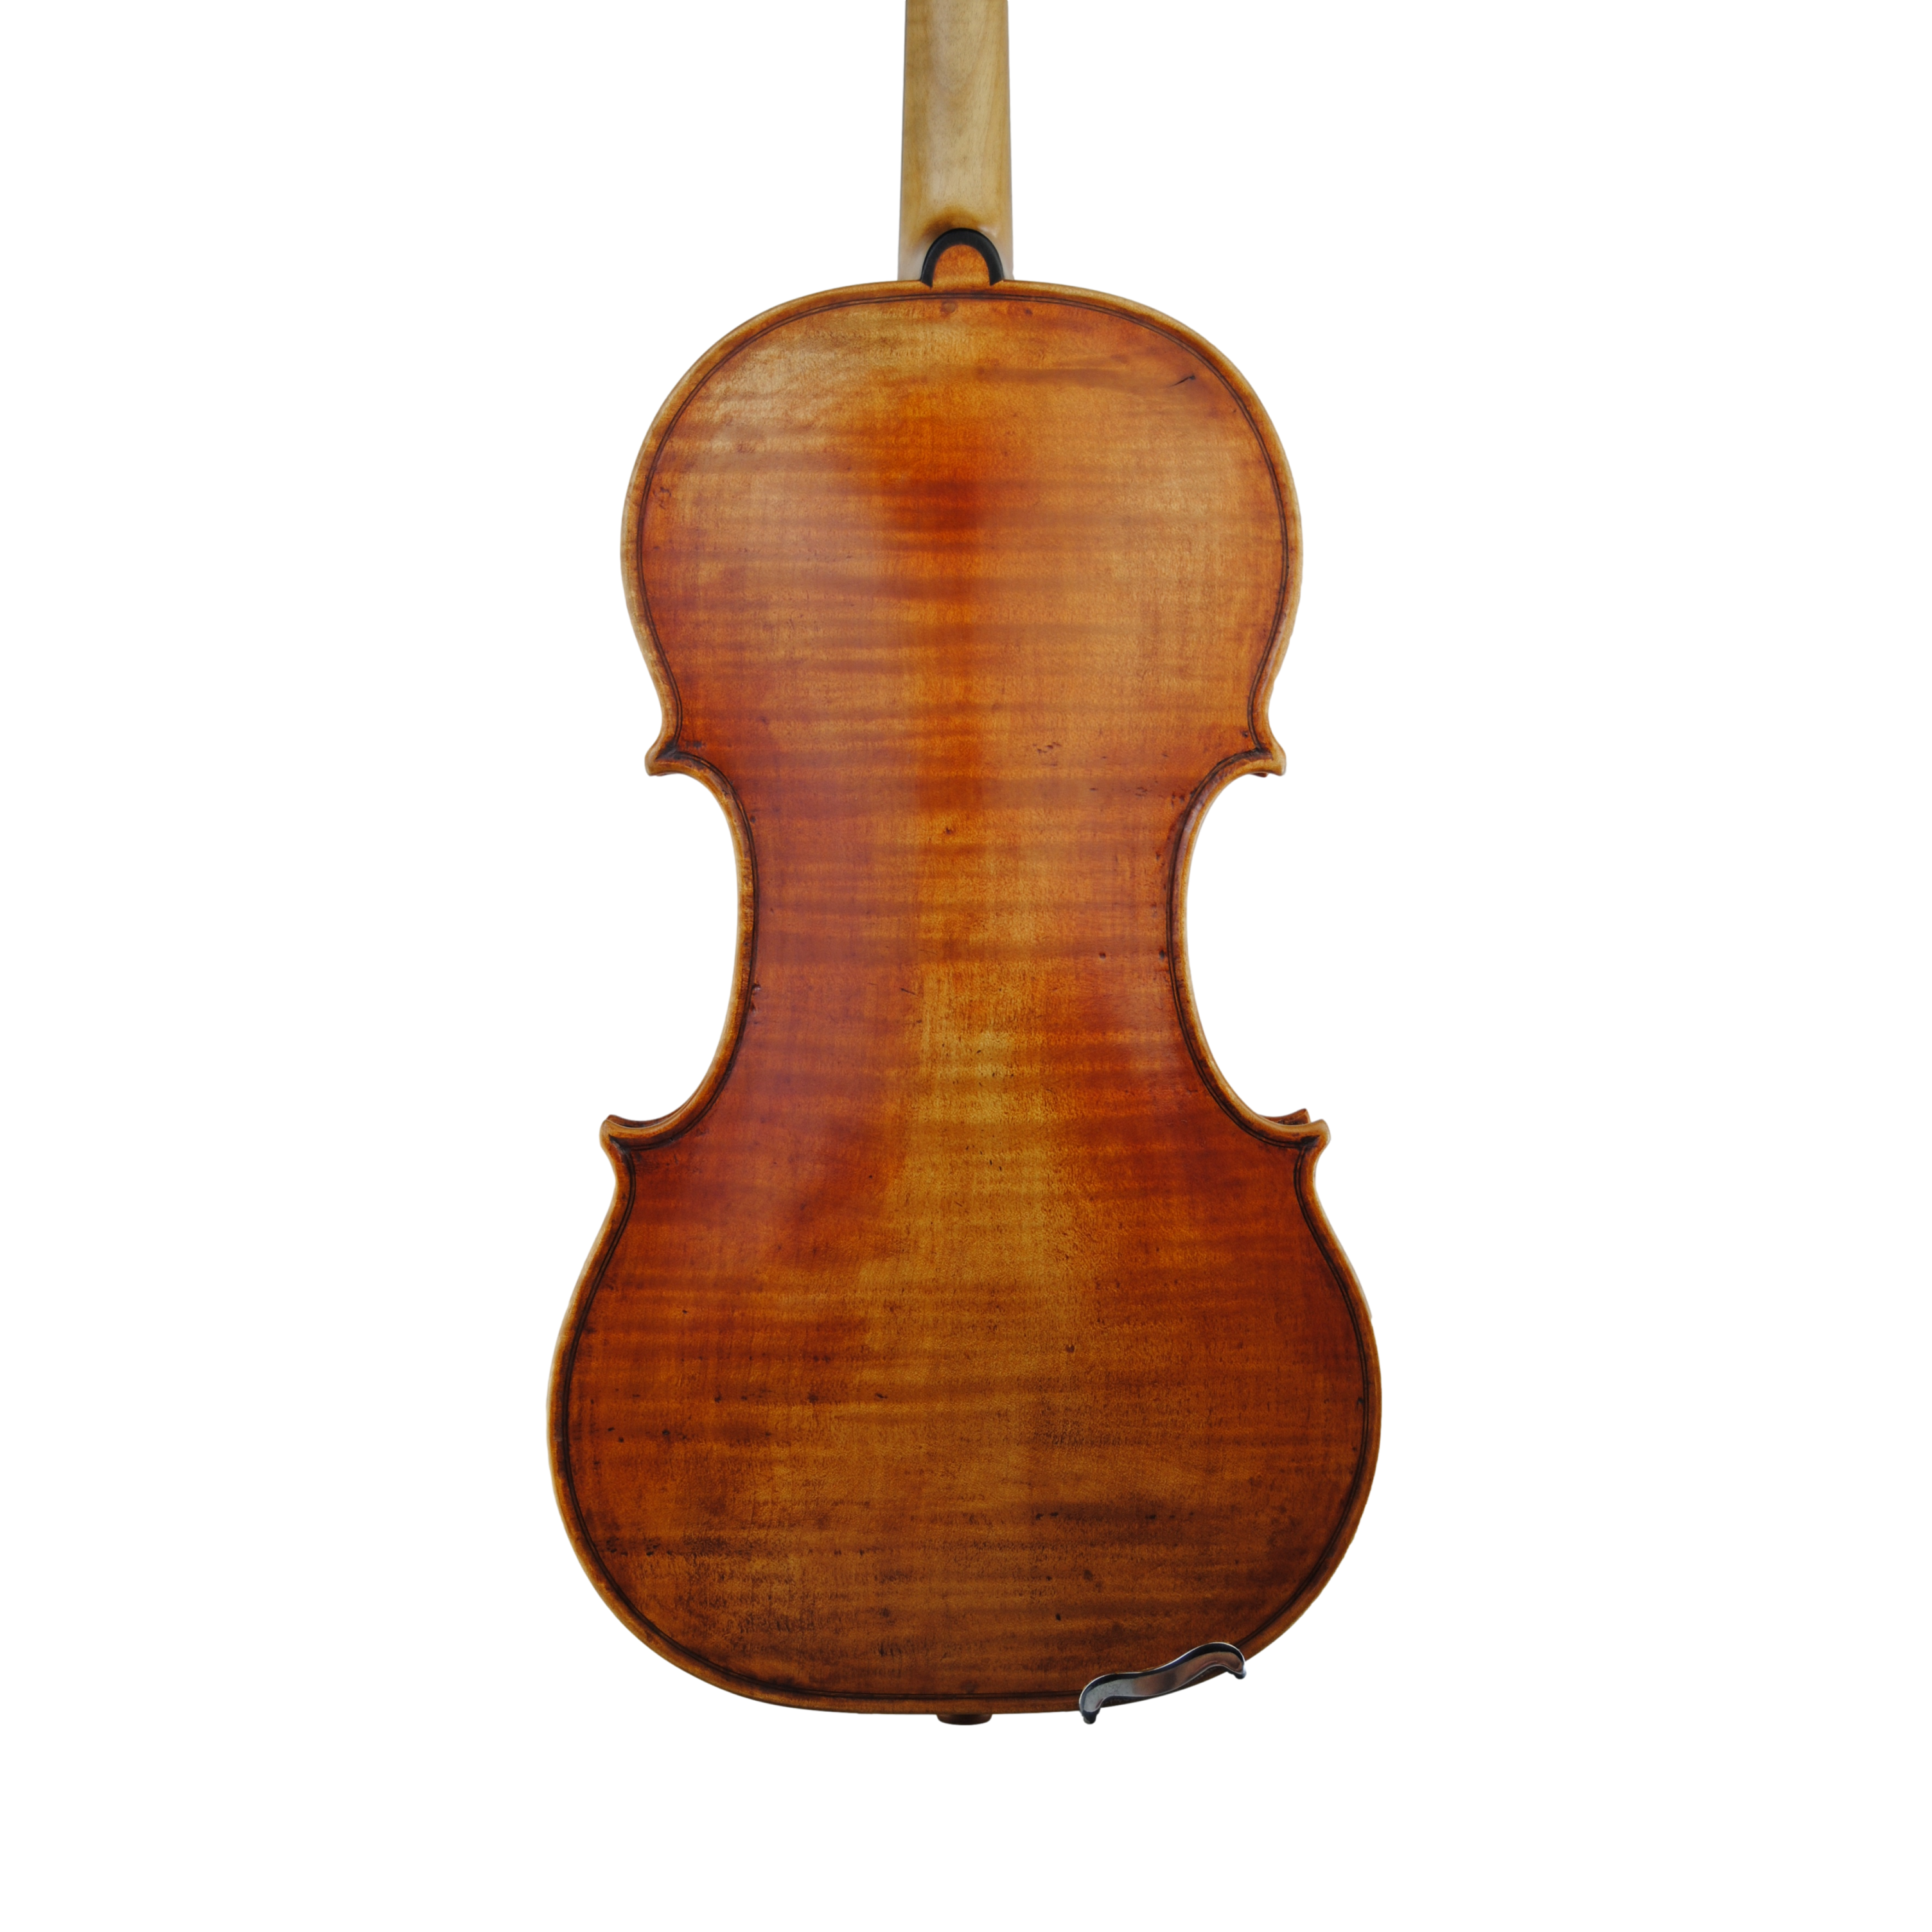 Violin - Marco Dotti, copy of Guarneri del Gesù "Lord Wilton", Cremona 2022